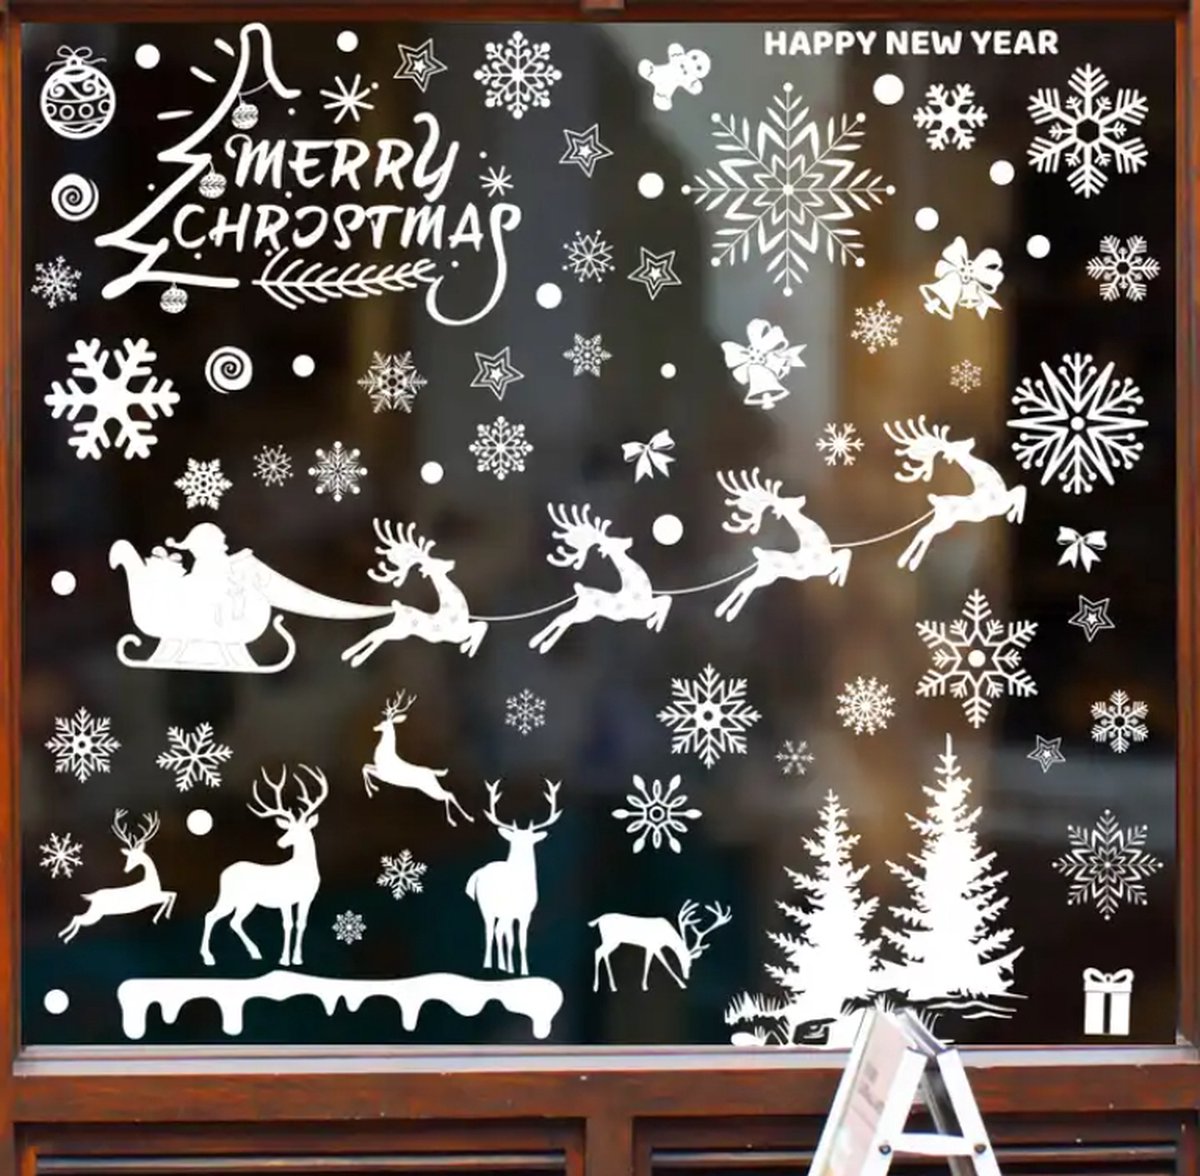 Raamstickers - Merry Christmas - Happy New Year - Kerst - Oud en Nieuw - Herbruikbaar - Statisch - Raamdecoratie - Wit - Winter - Kerstman - Rendieren - Sneeuwvlokken